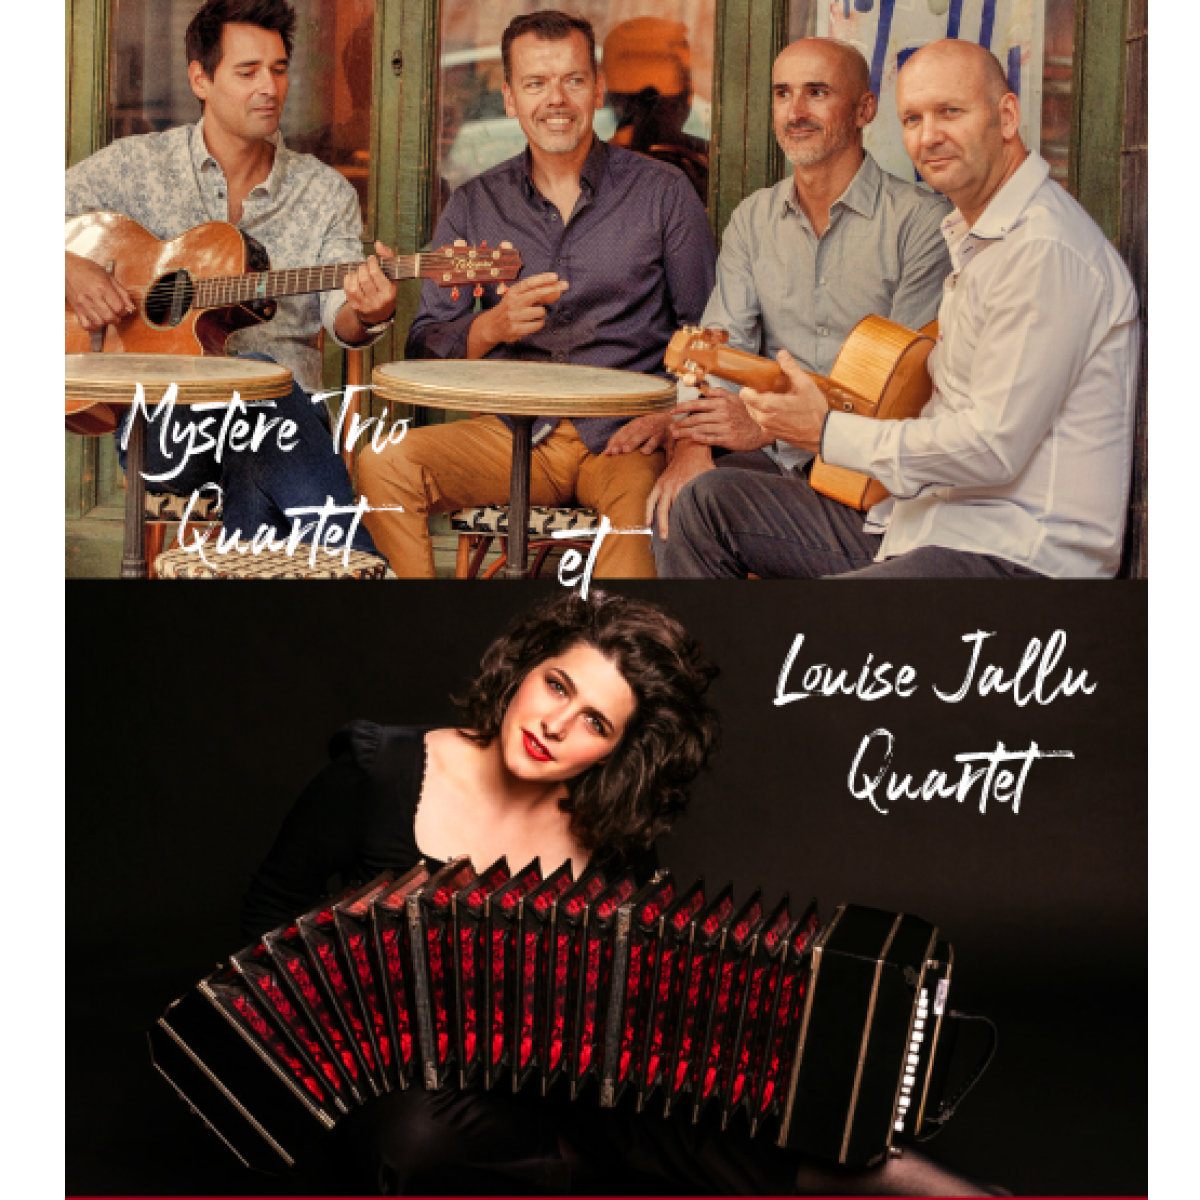 Plateau concert : Mystère Trio 4Tet – Les ondes vagabondes et Louise Jallu 4Tet – Piazzolla 21